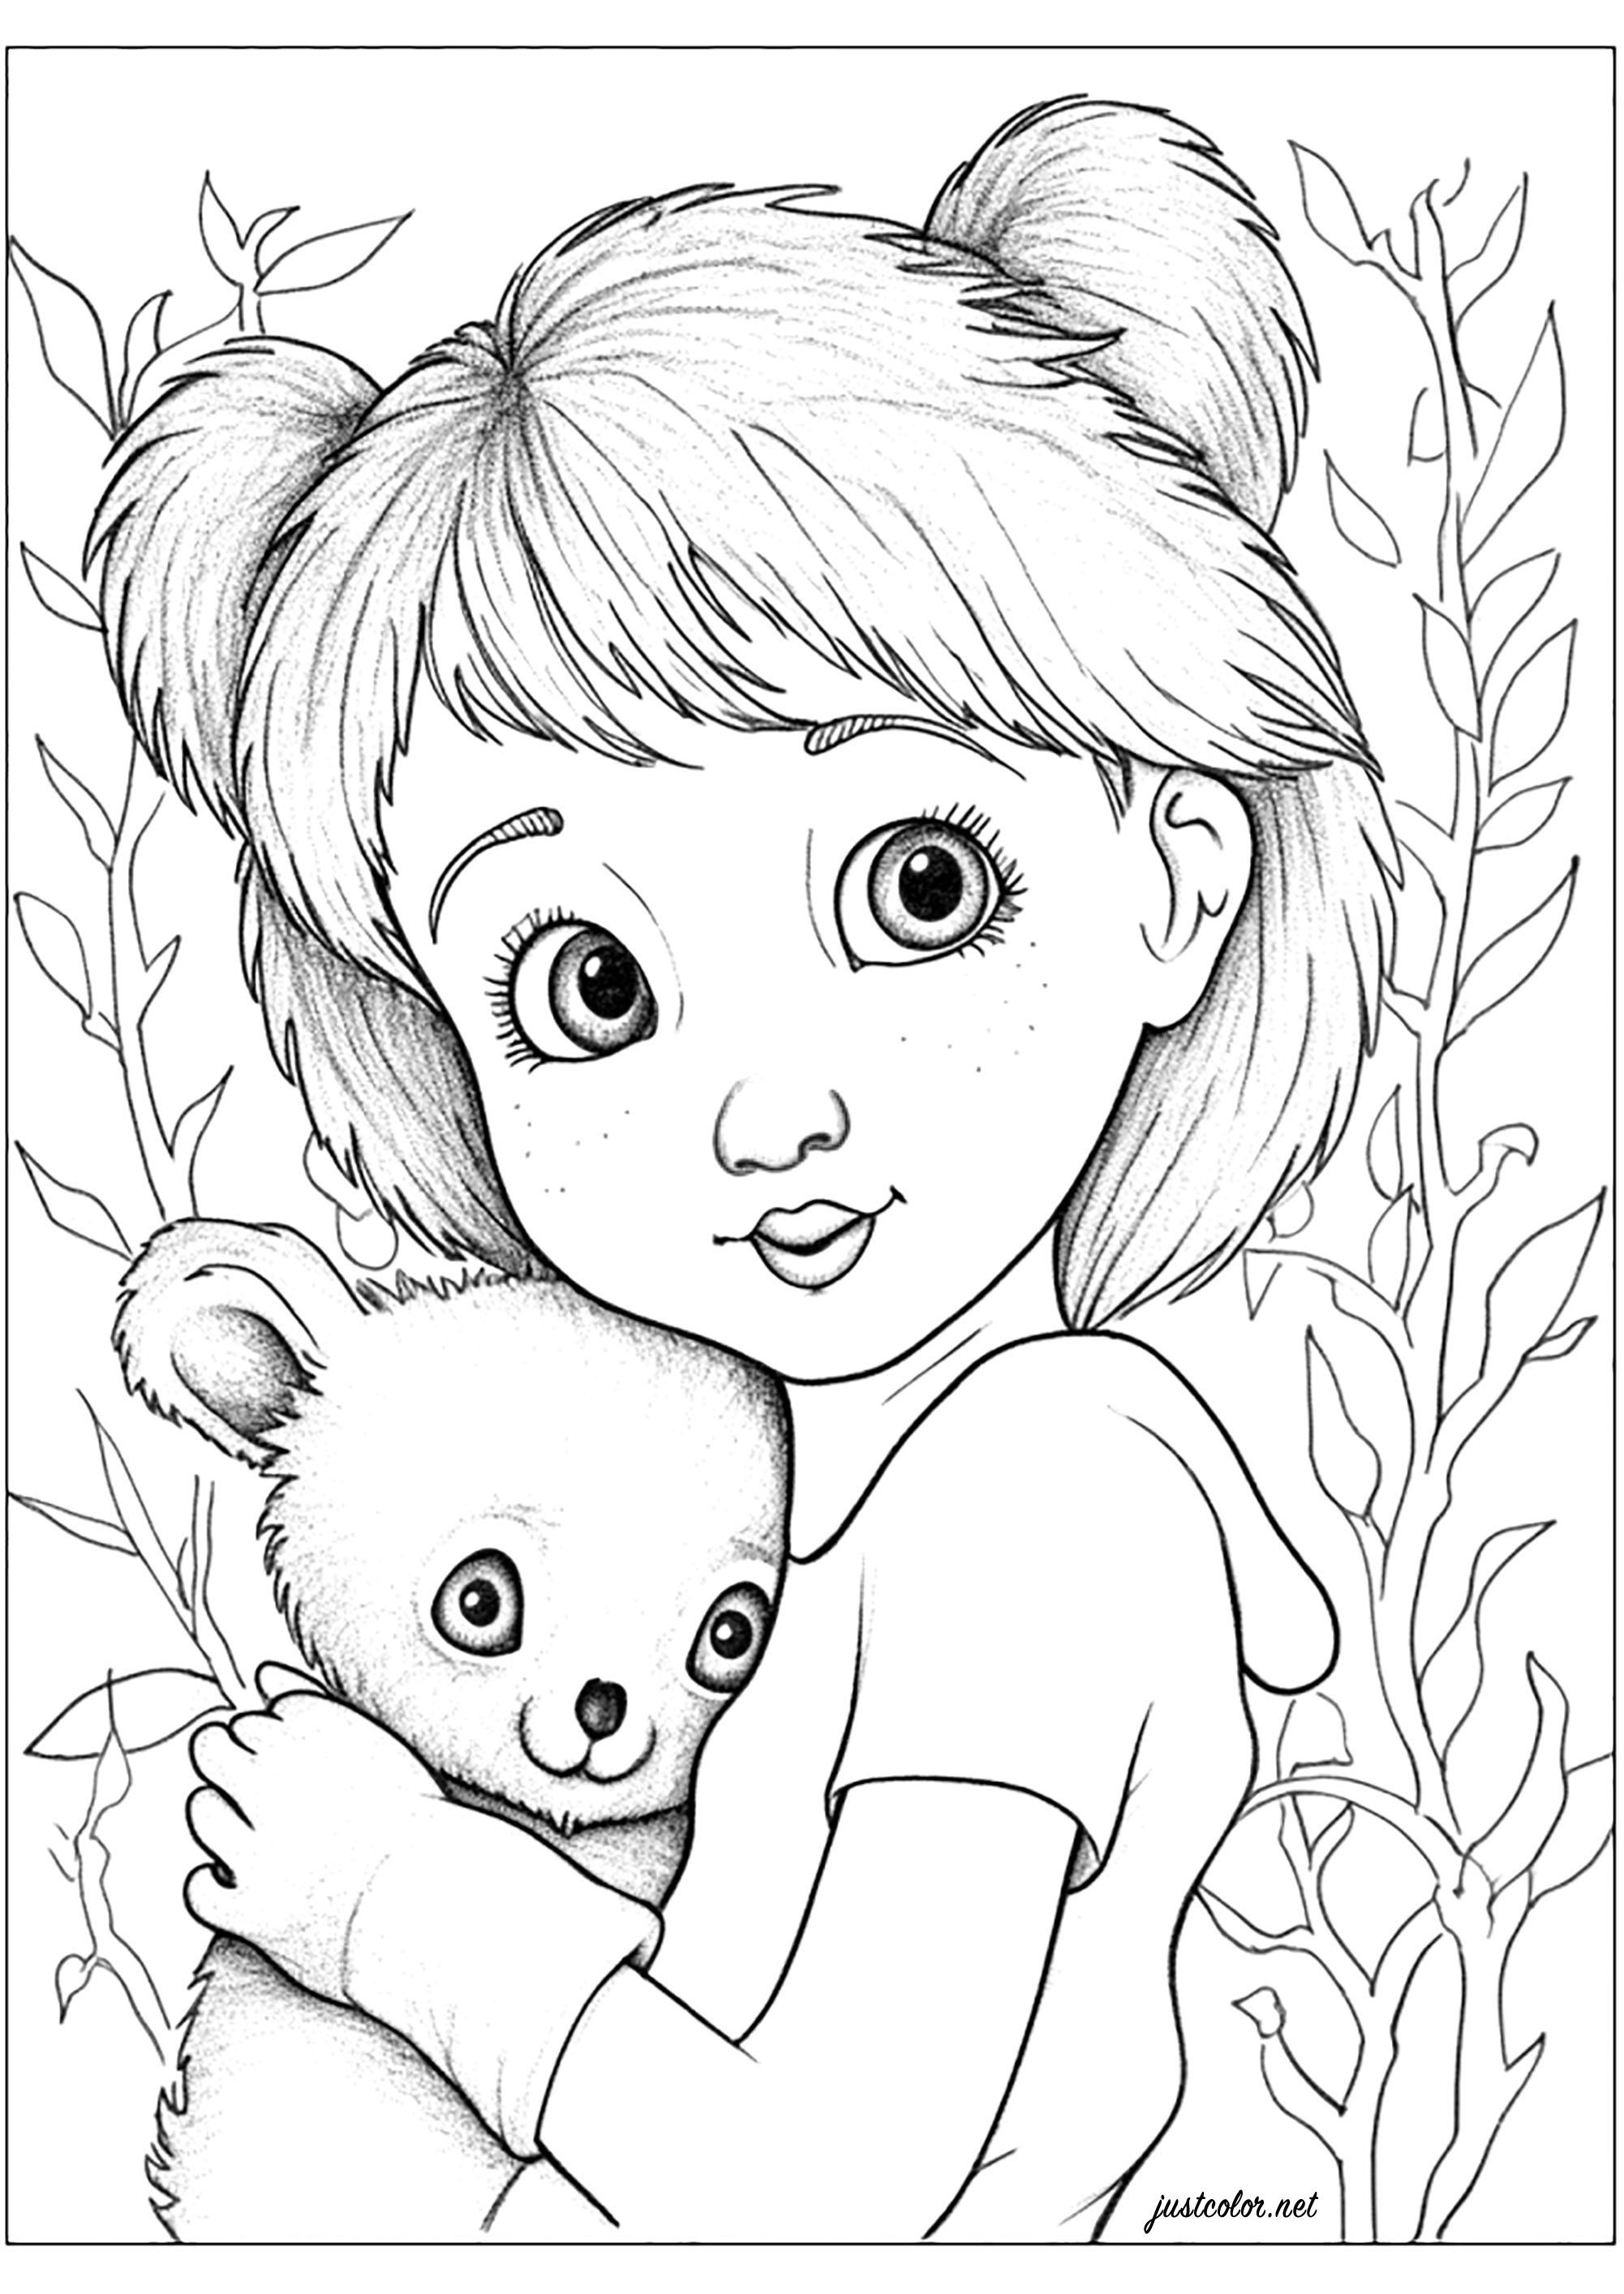 Dibujos para colorear gratis de Osos Koala para imprimir y colorear, para niños